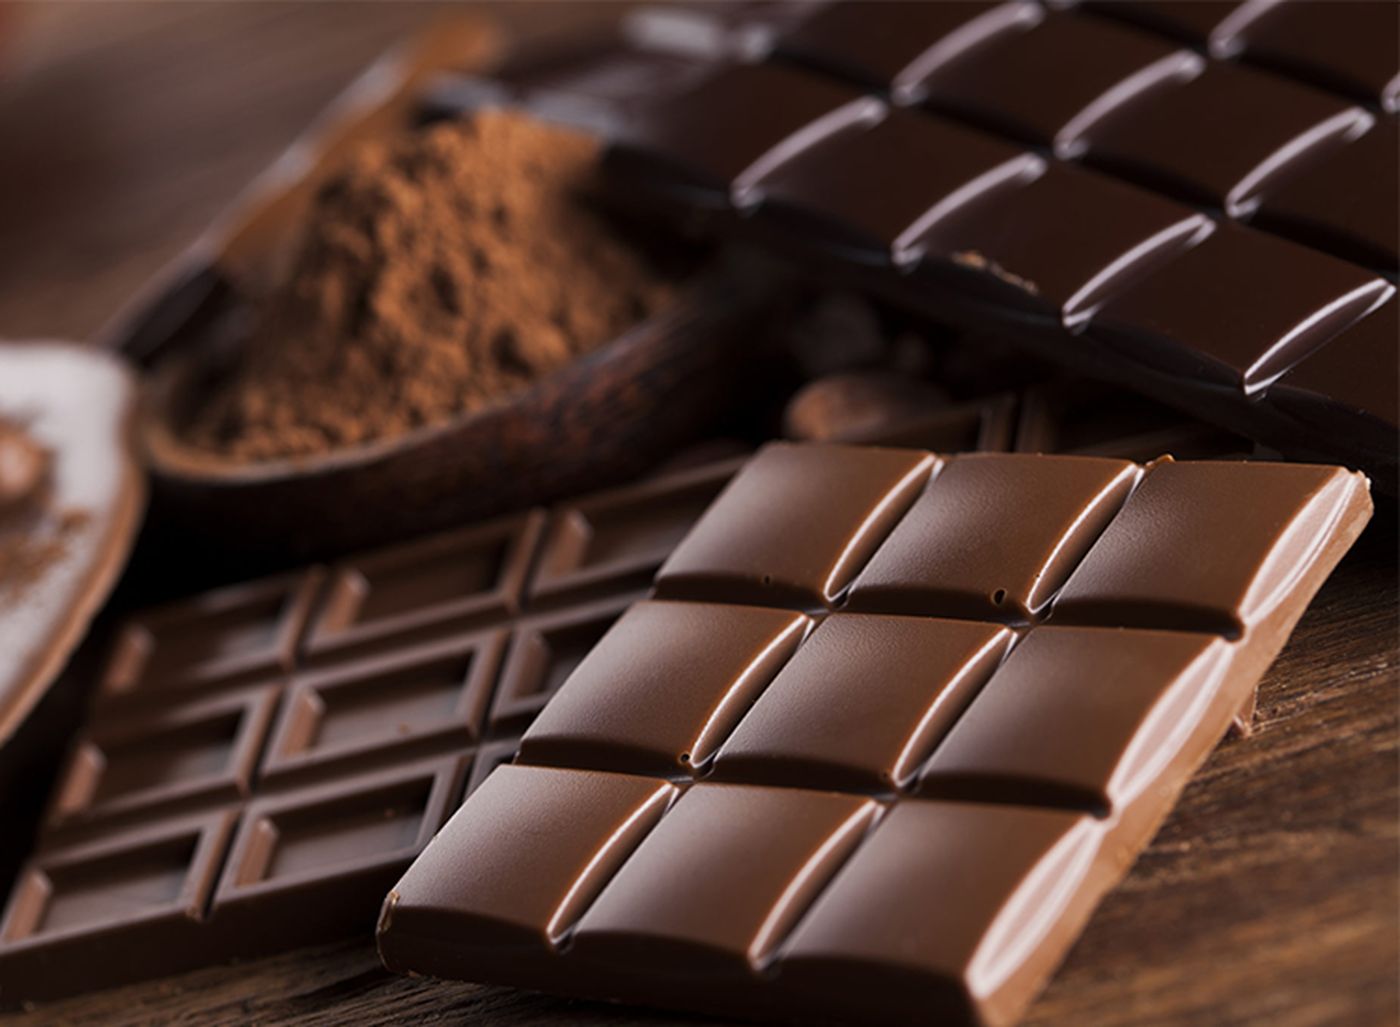 S-au furat opt tone de ciocolată în valoare de 80.000 de euro. Cum au reușit hoții o asemenea „performanță”